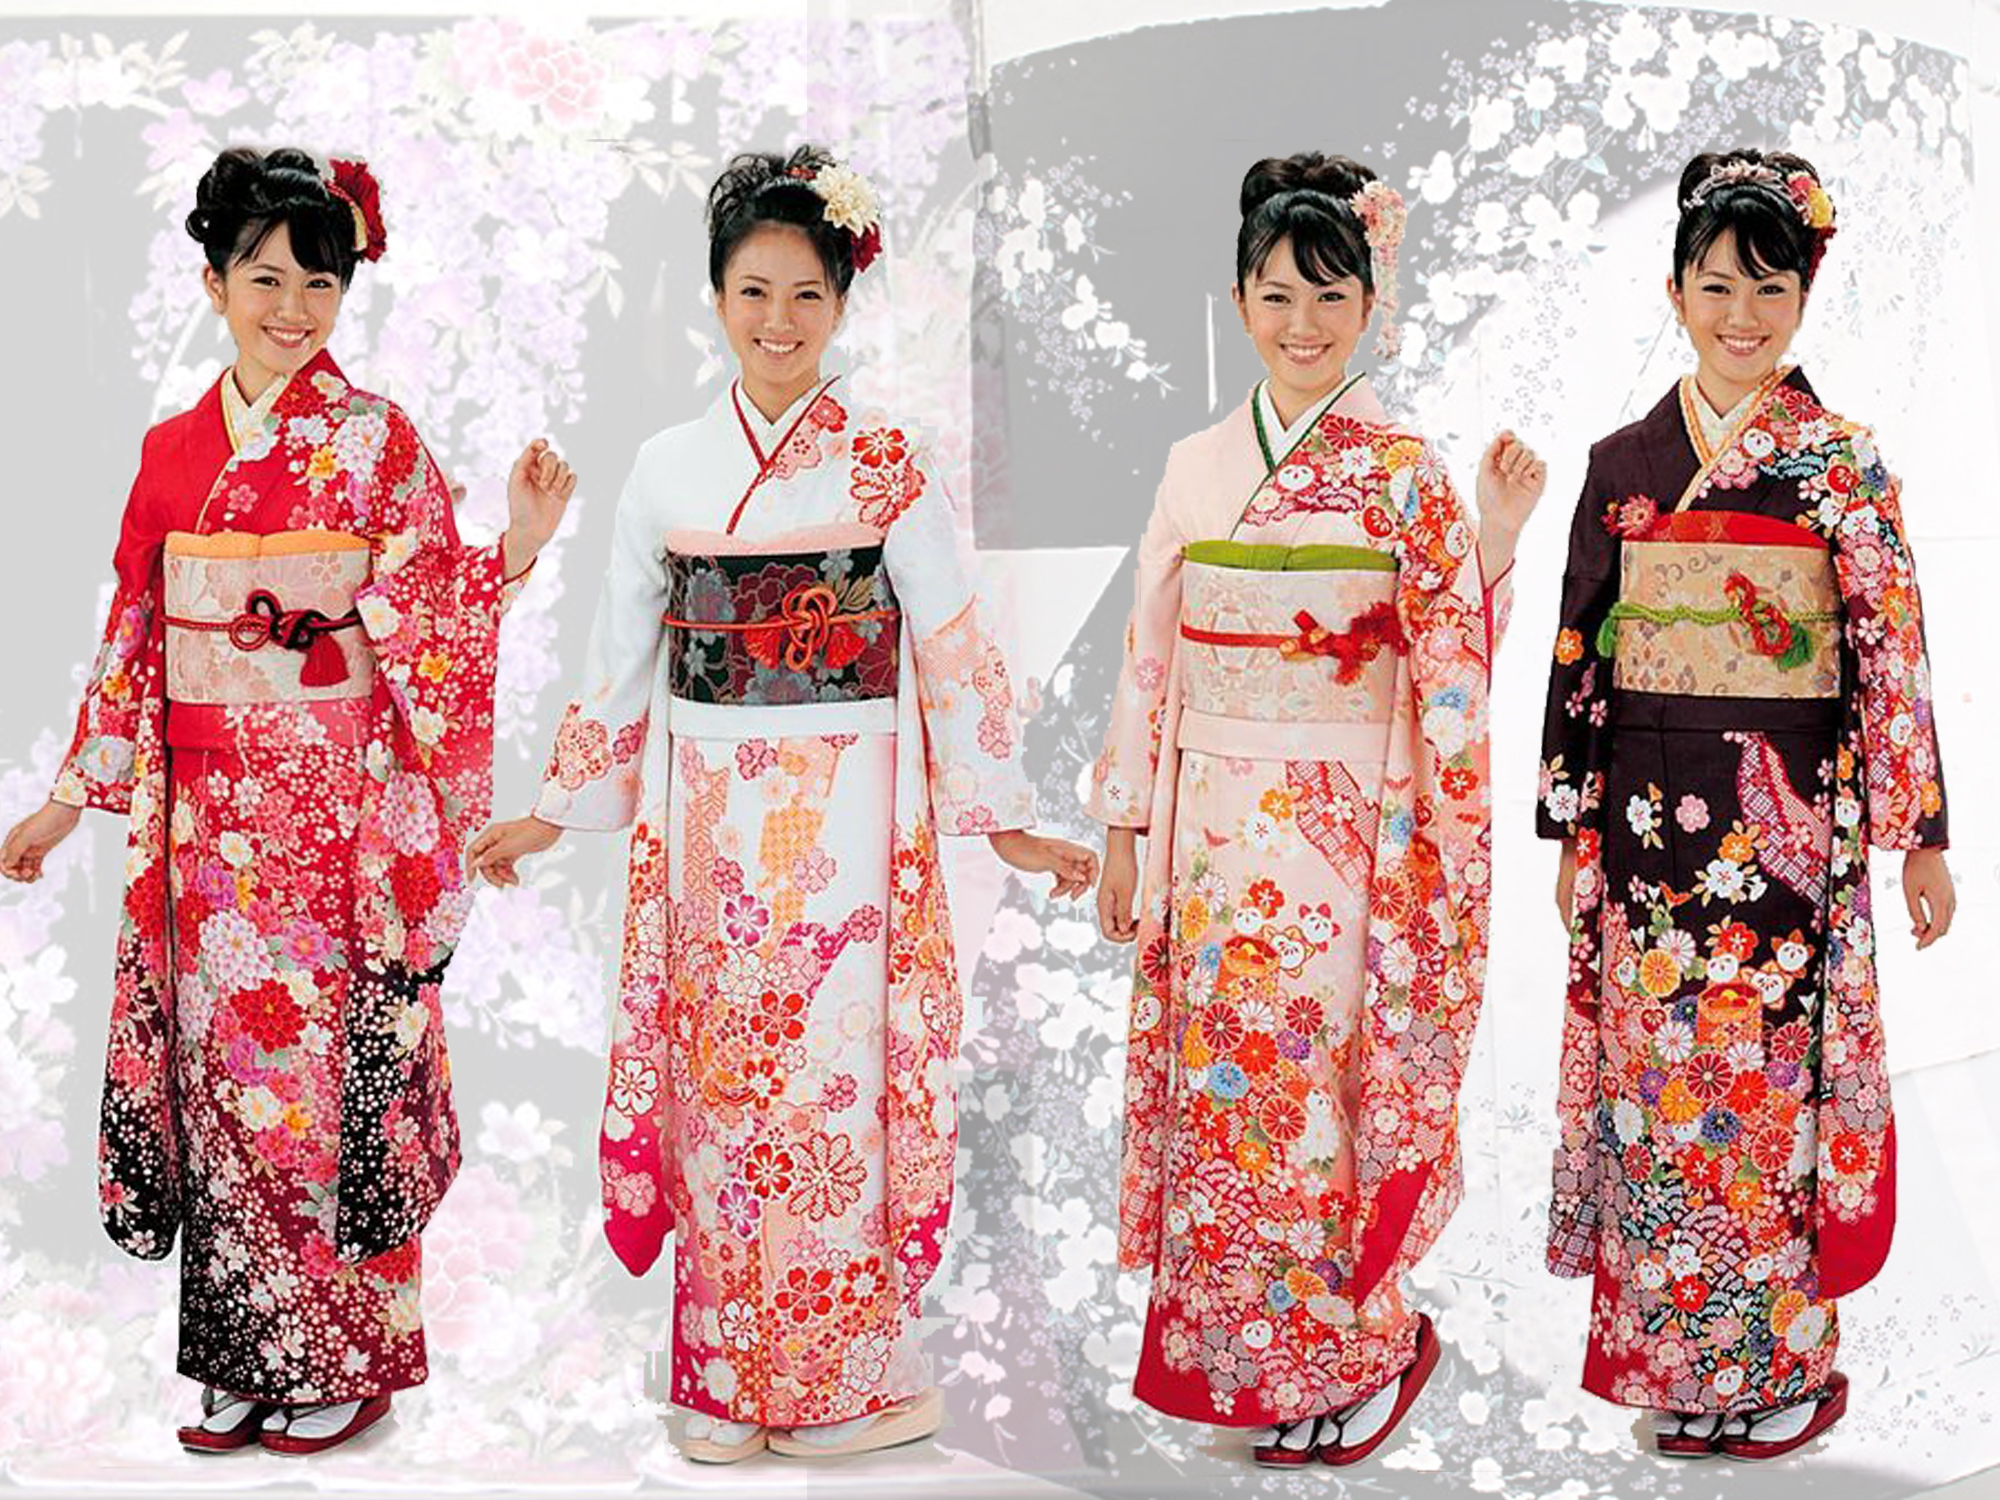 日本京都举办和服展 每件造价超12万元